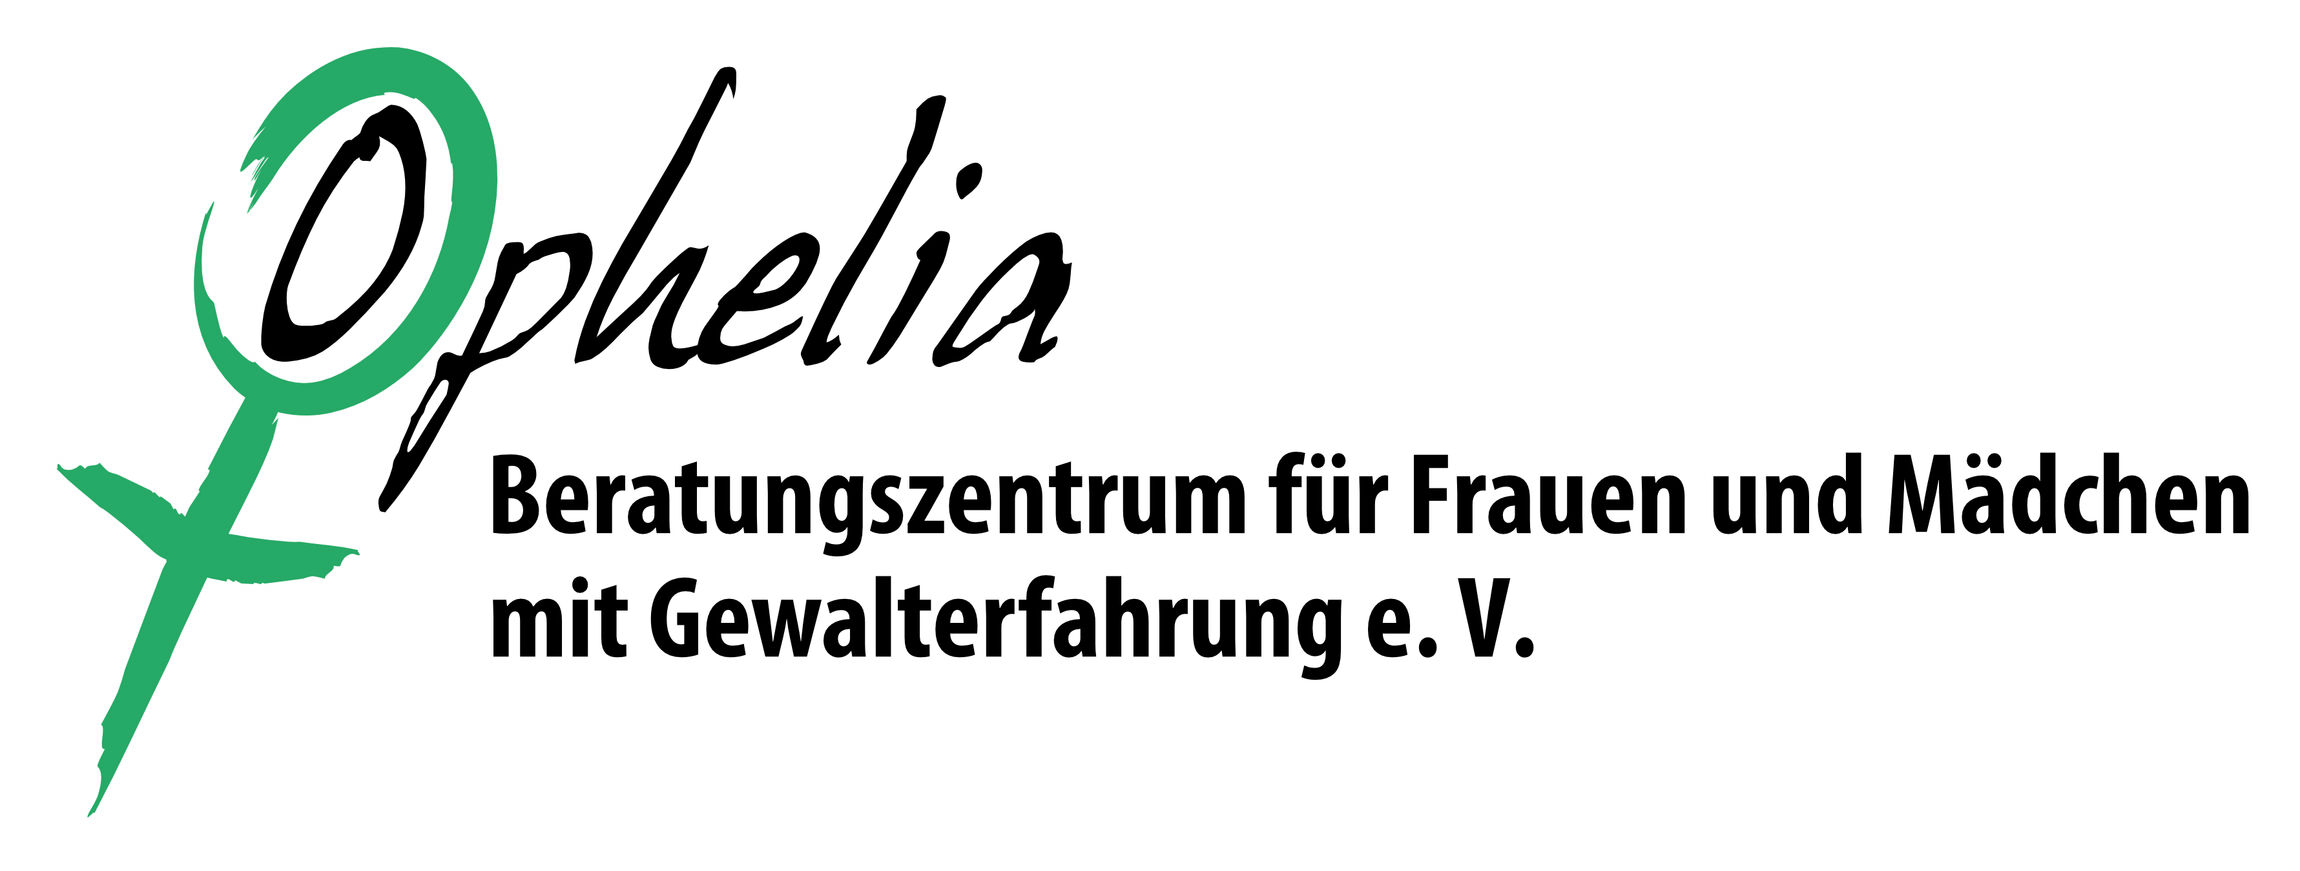 Logo-Ophelia-Beratungszentrum